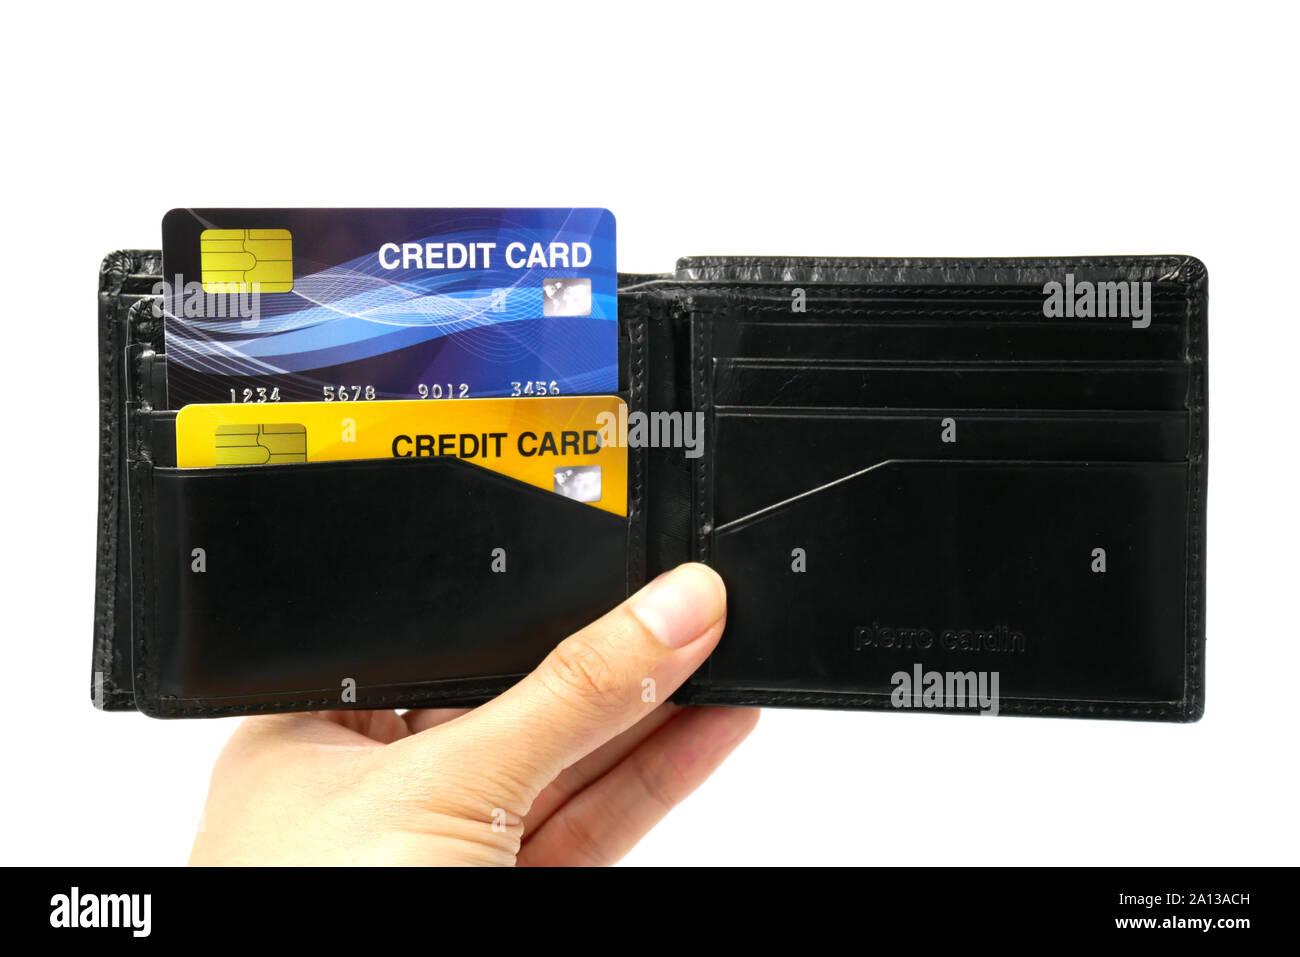 Mockup carta di credito, il famoso metodo di pagamento con plastica e carta di chipcard close up shot e isolato su sfondo bianco Foto Stock